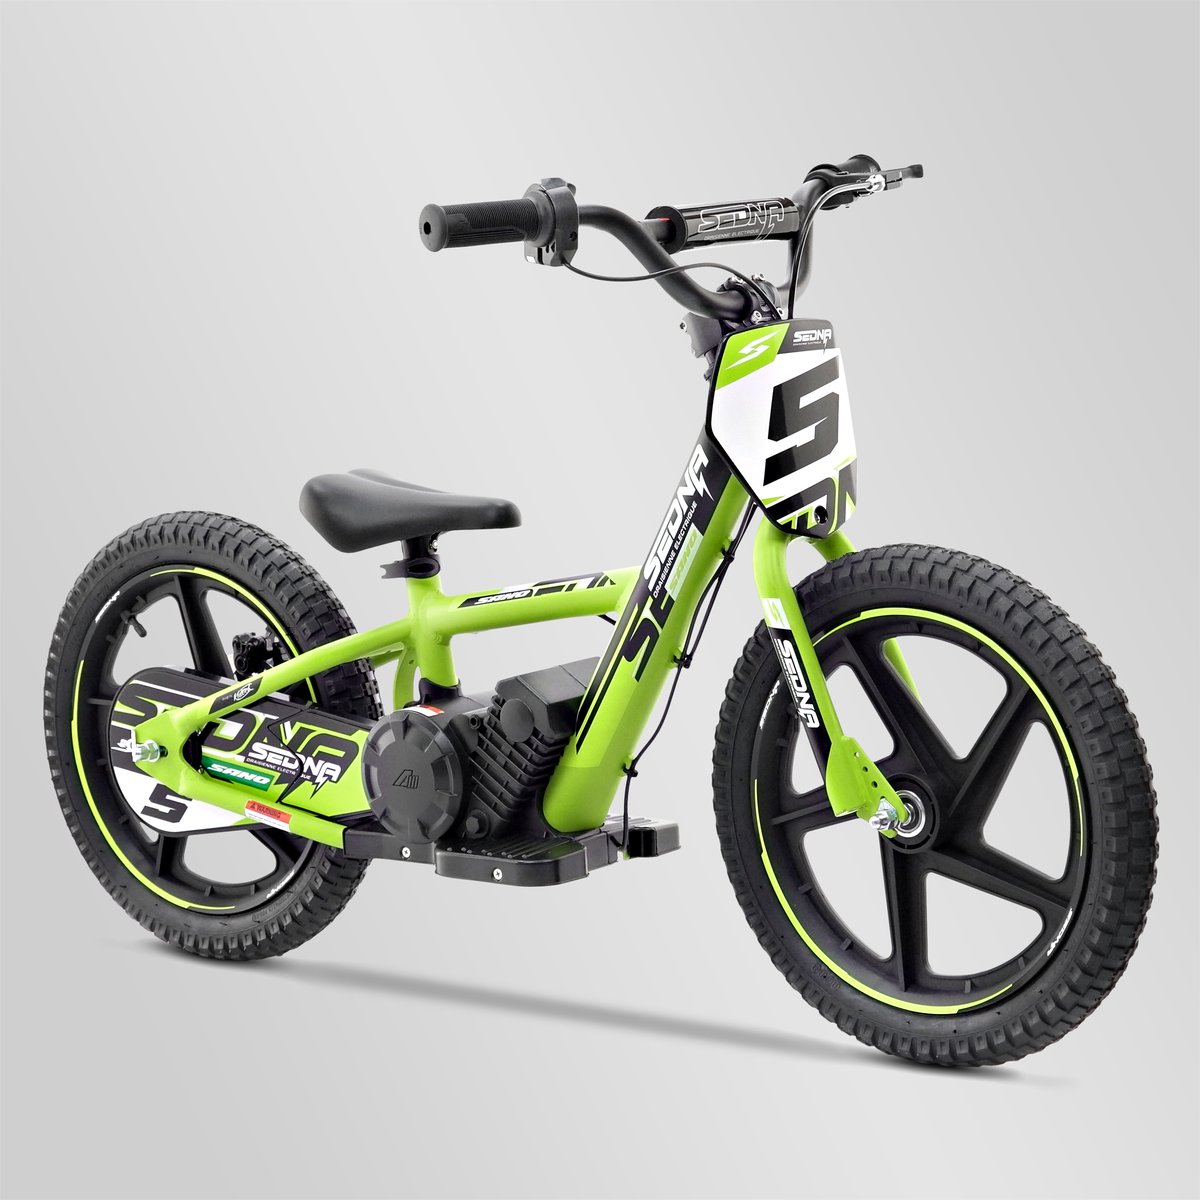 Robinet d'essence  Smallmx - Dirt bike, Pit bike, Quads, Minimoto